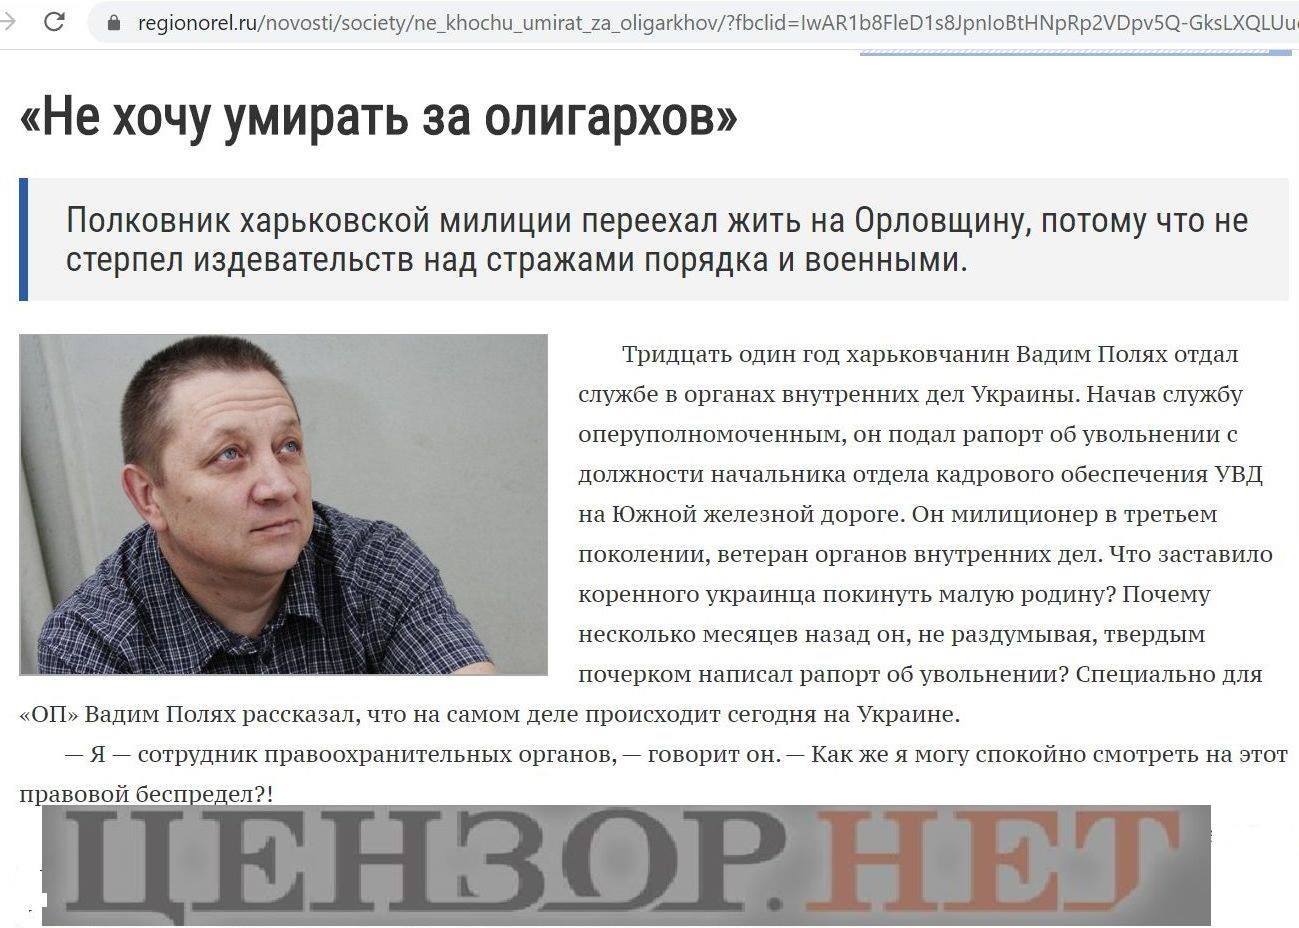 https://img.glavnoe.ua/Image2018/2020/05/29/0002.jpg